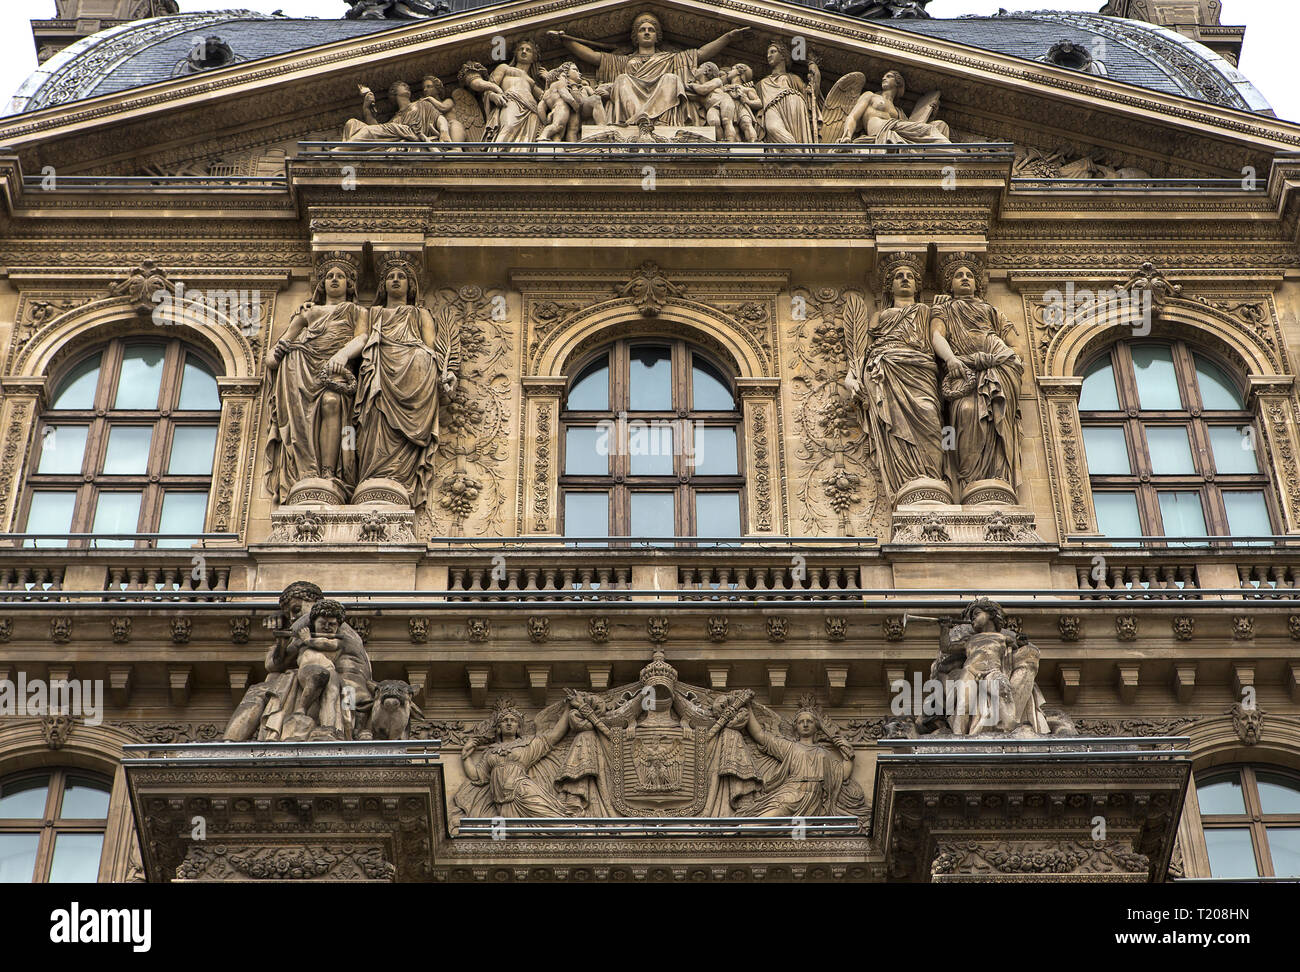 PARIS, FRANCE, APRIL 13, 2017 : architectural exteriors details of the Louvre museum, april 13, 2017, in Paris, France Stock Photo